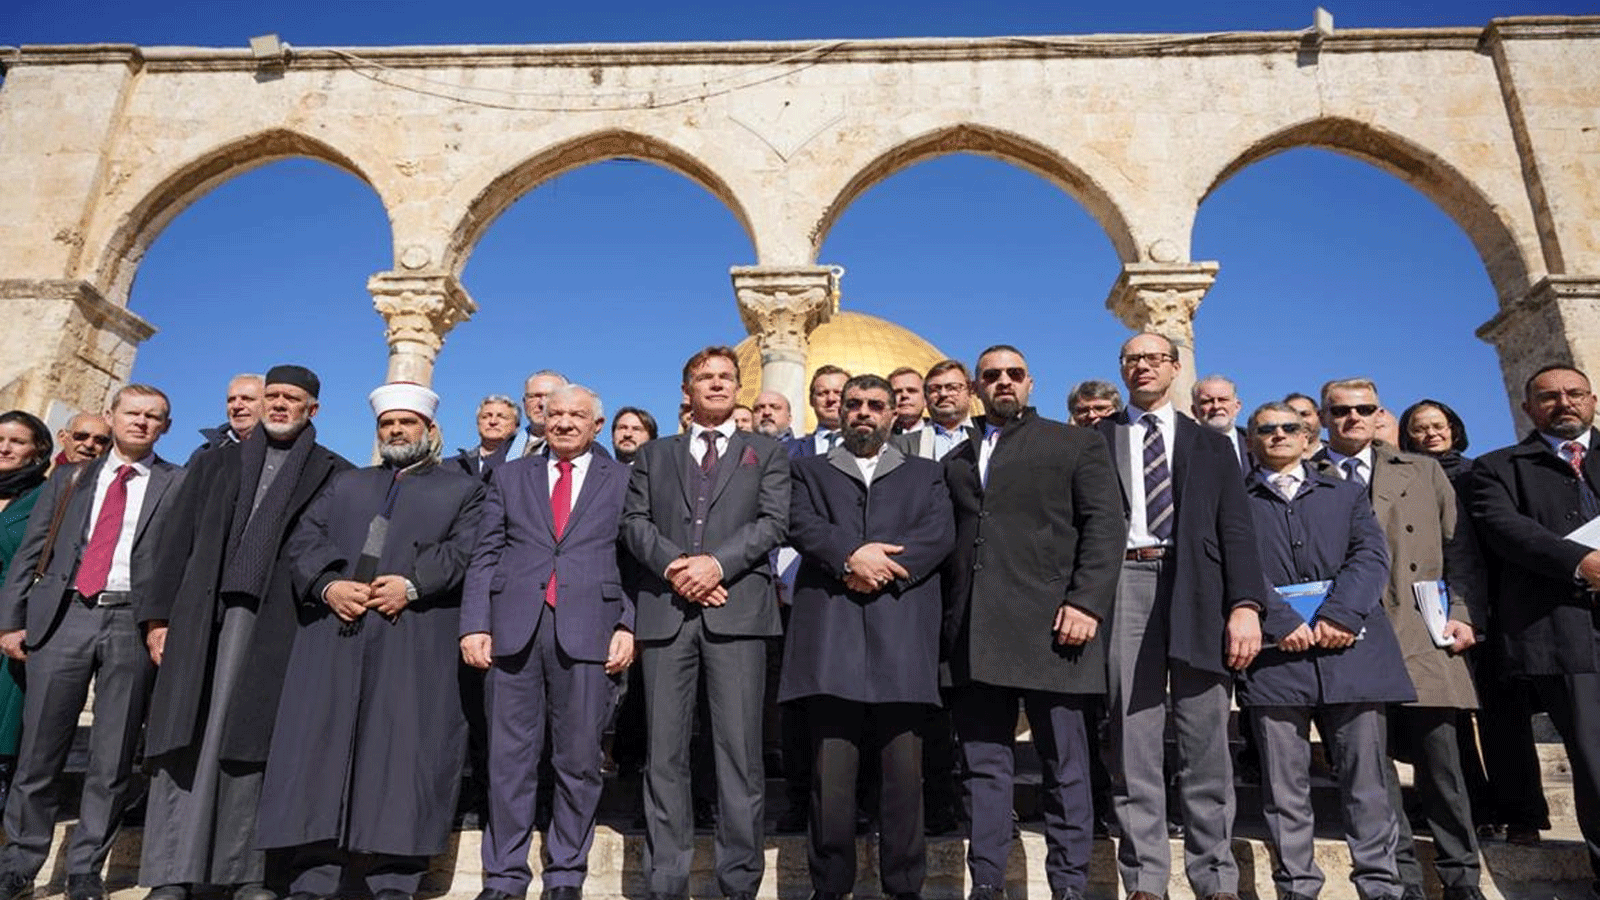 دبلوماسيون أوروبيون في زيارة للمسجد الأقصى.